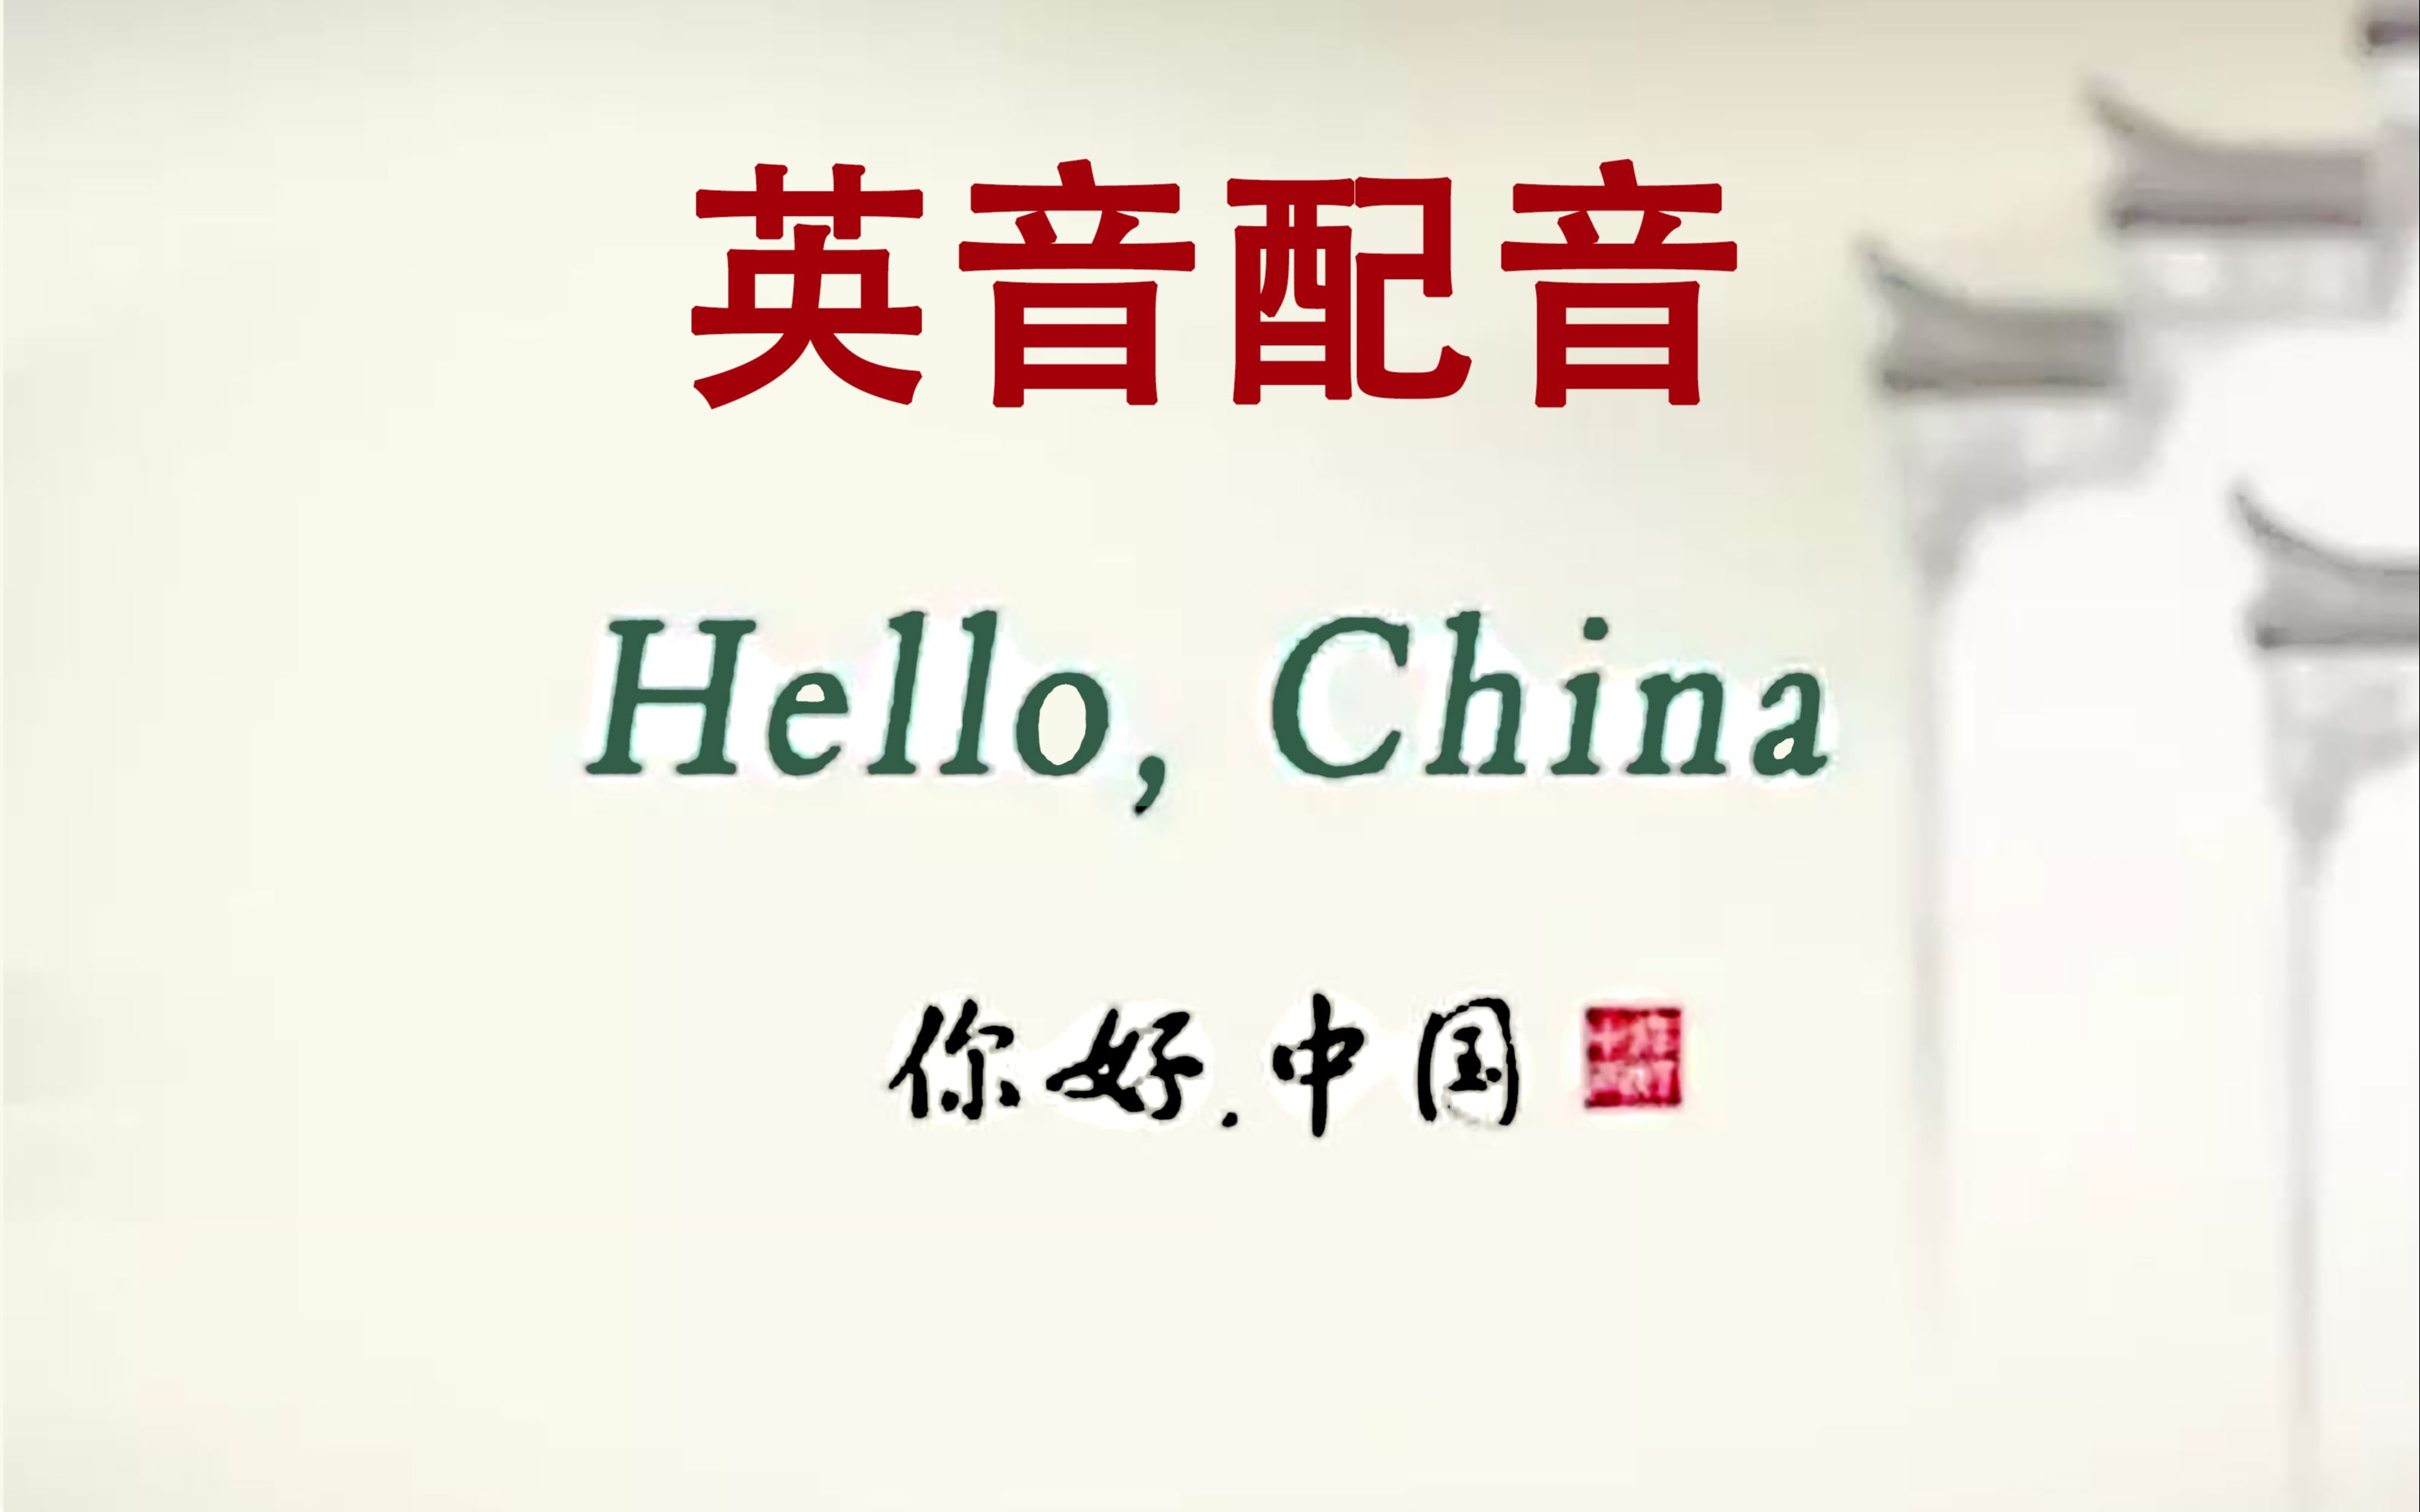 [图]【太阳】Hello China《你好中国》英音配音